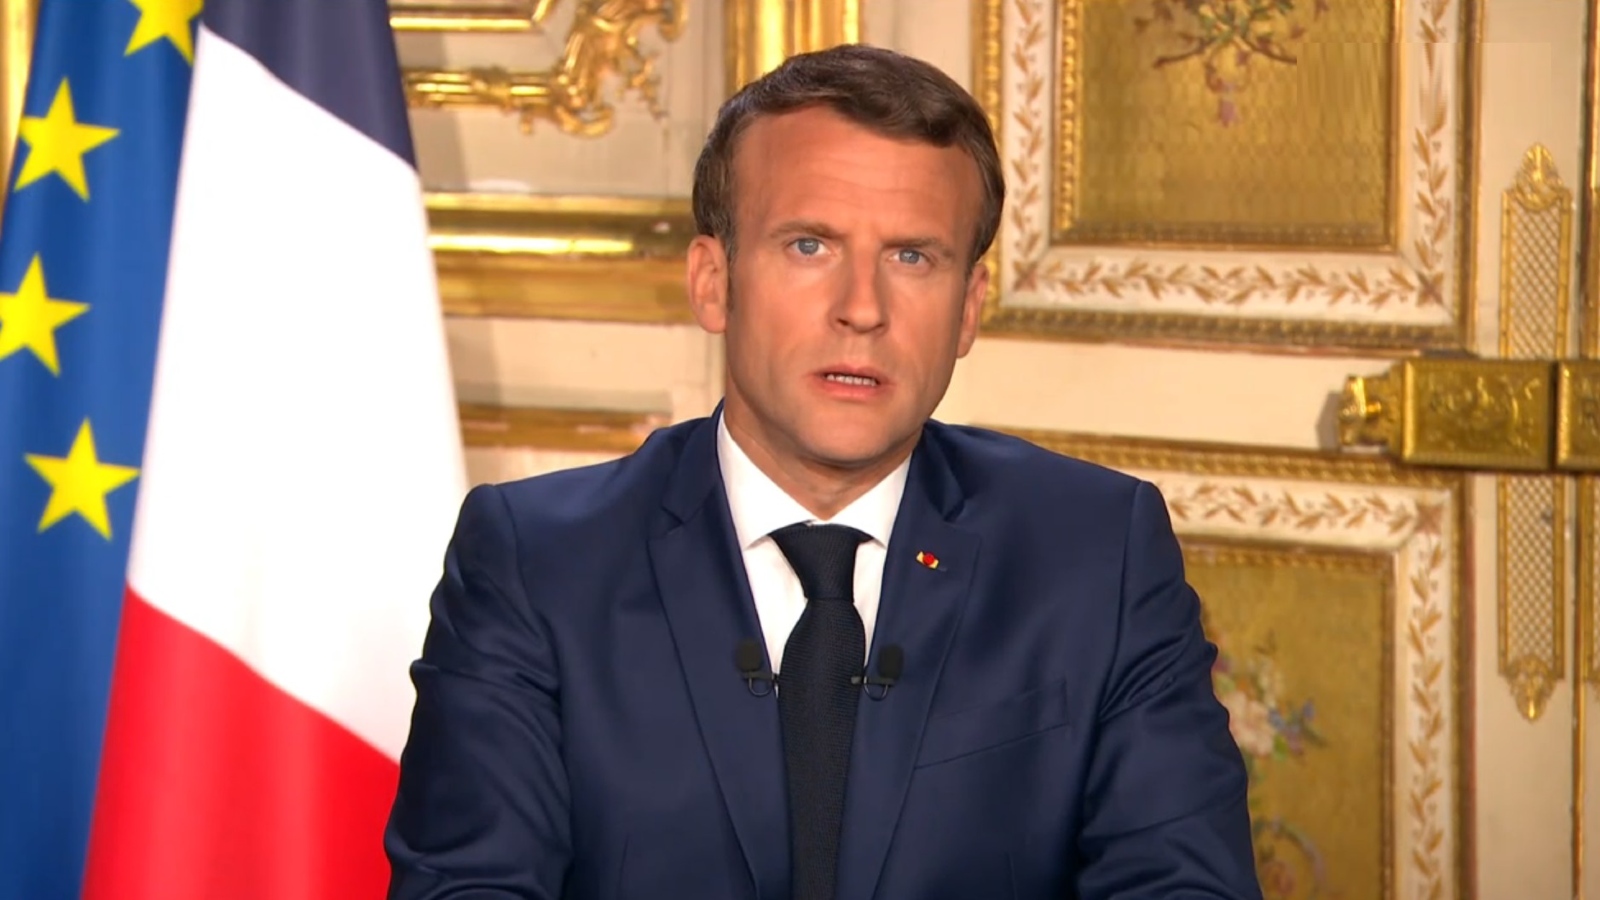 Traçage numérique : Emmanuel Macron officialise l'arrivée prochaine d'une application